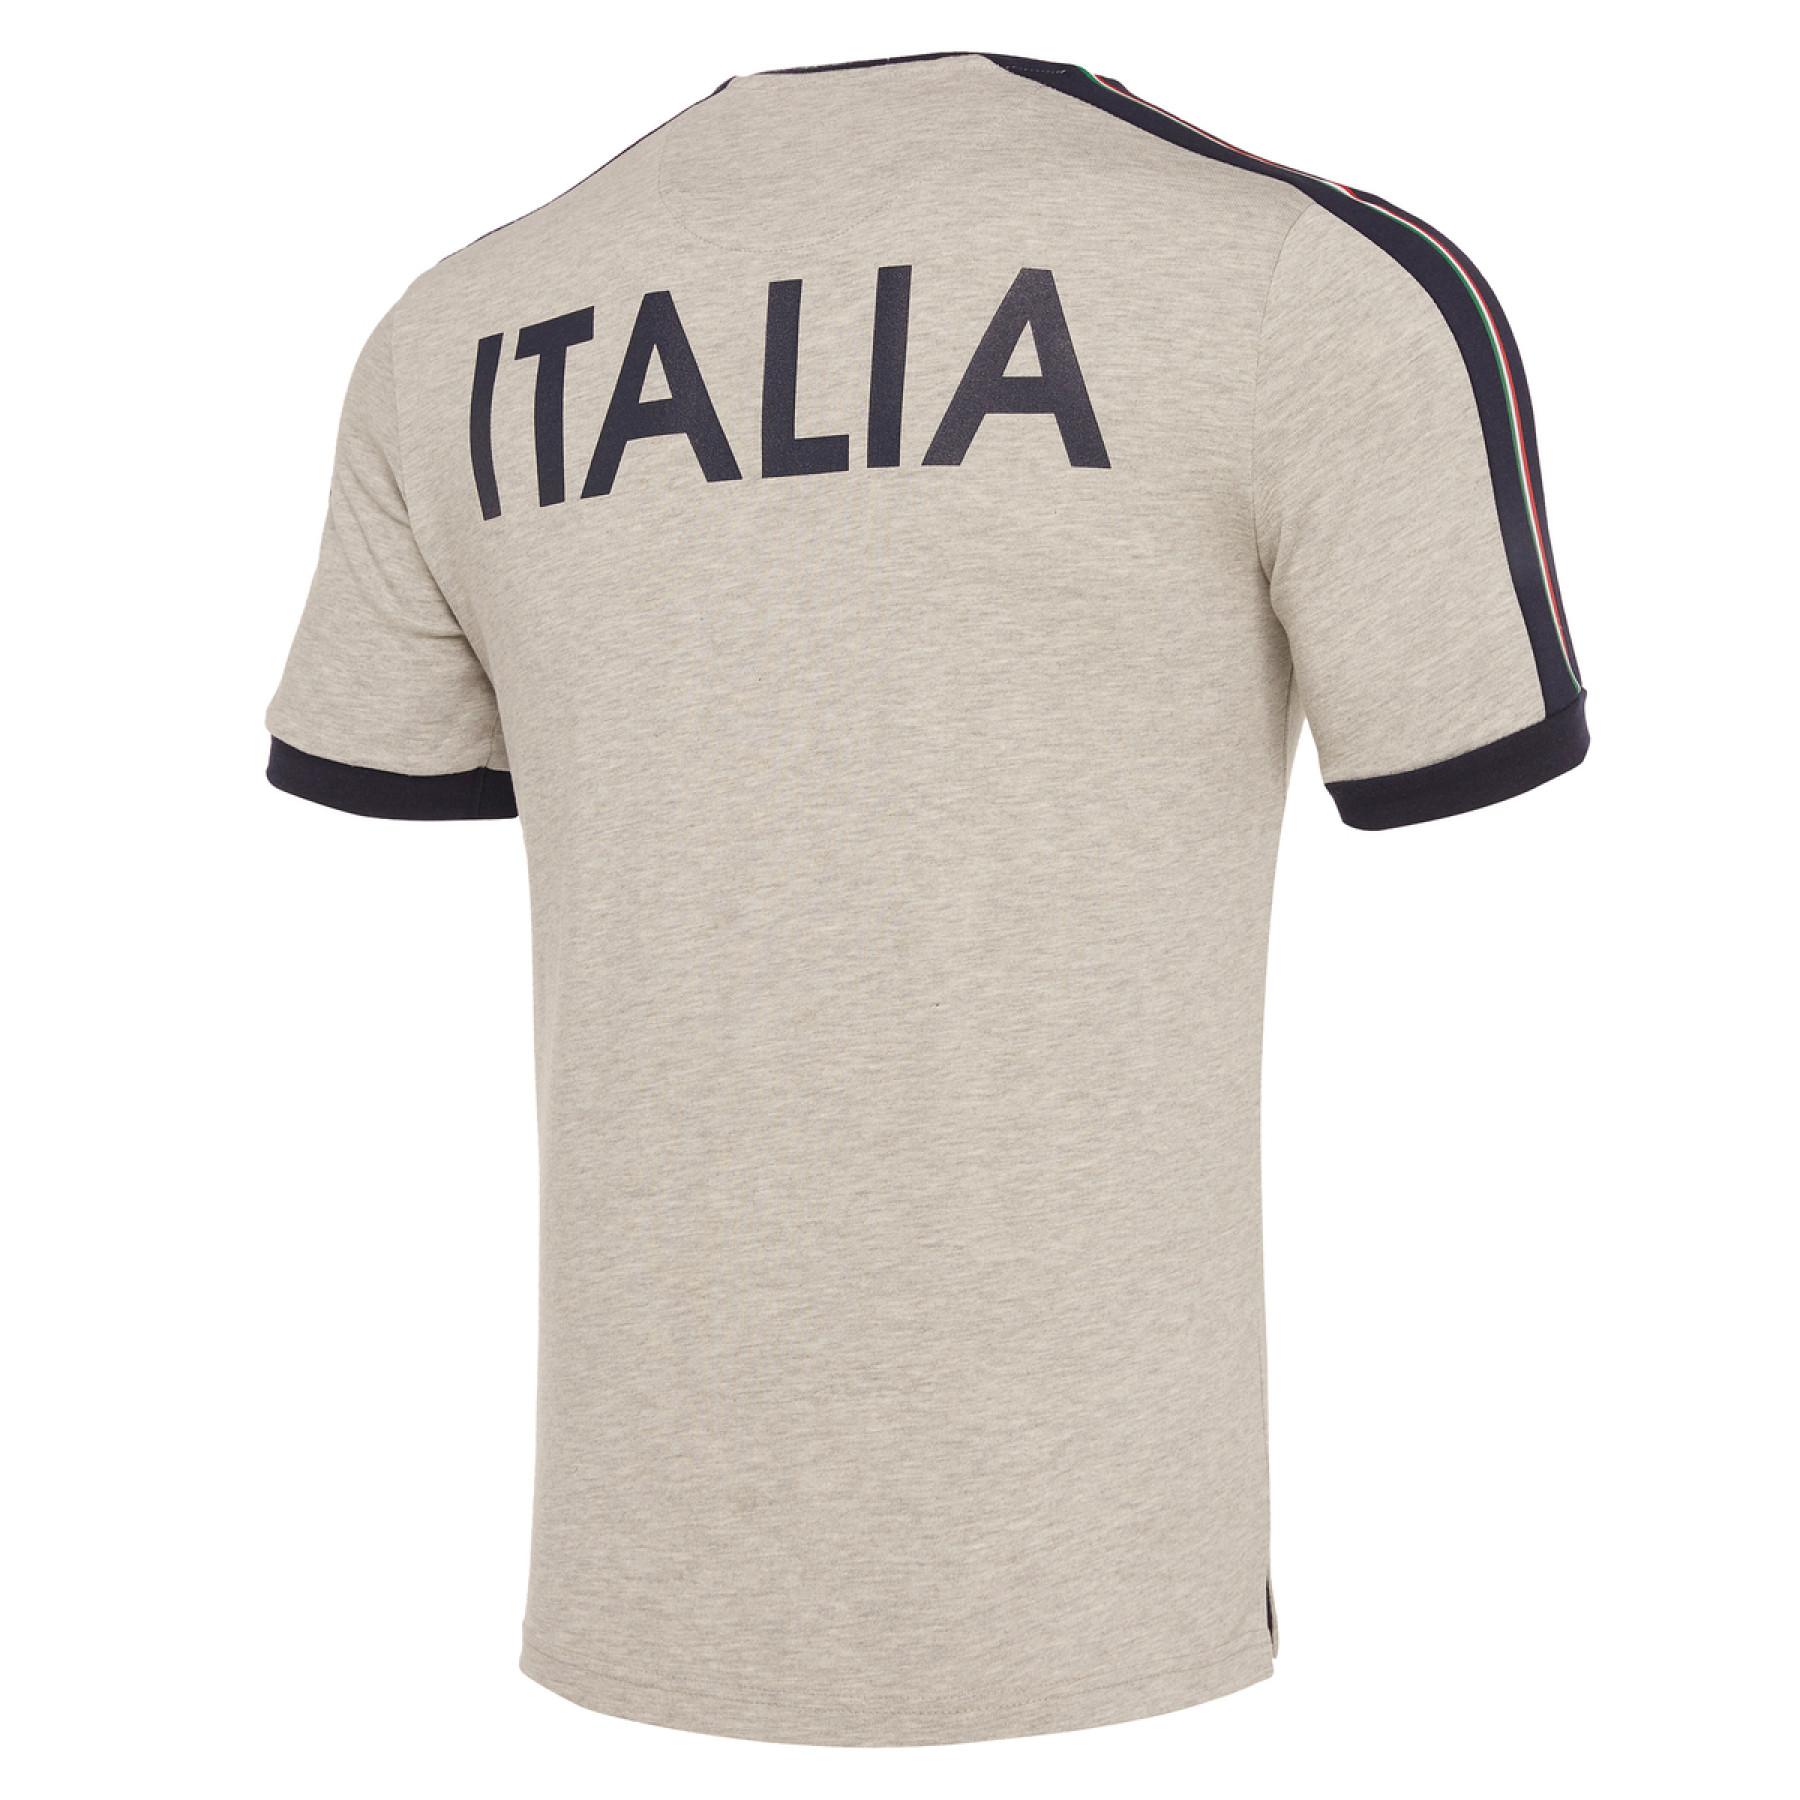 Katoenen T-shirt Italie rubgy 2019